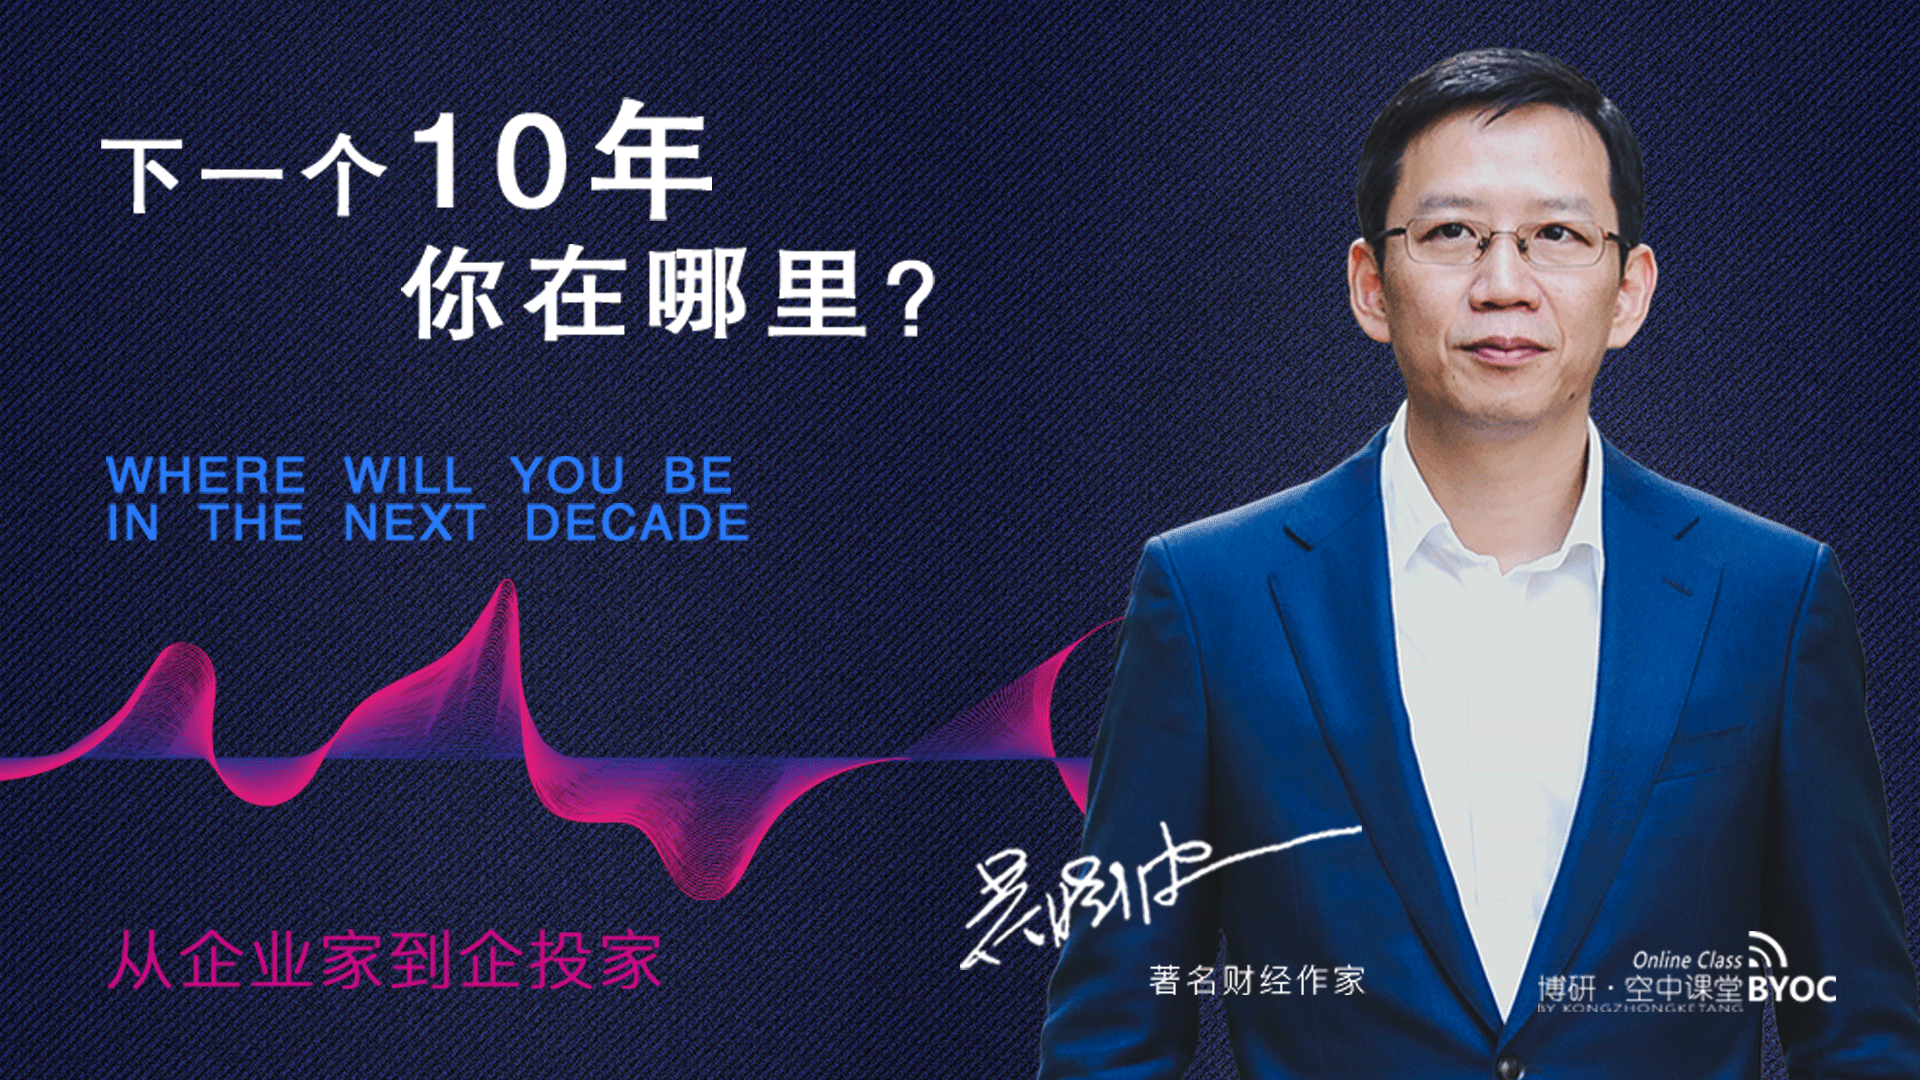 著名财经作家:吴晓波先生讲述《下一个十年》投资机遇